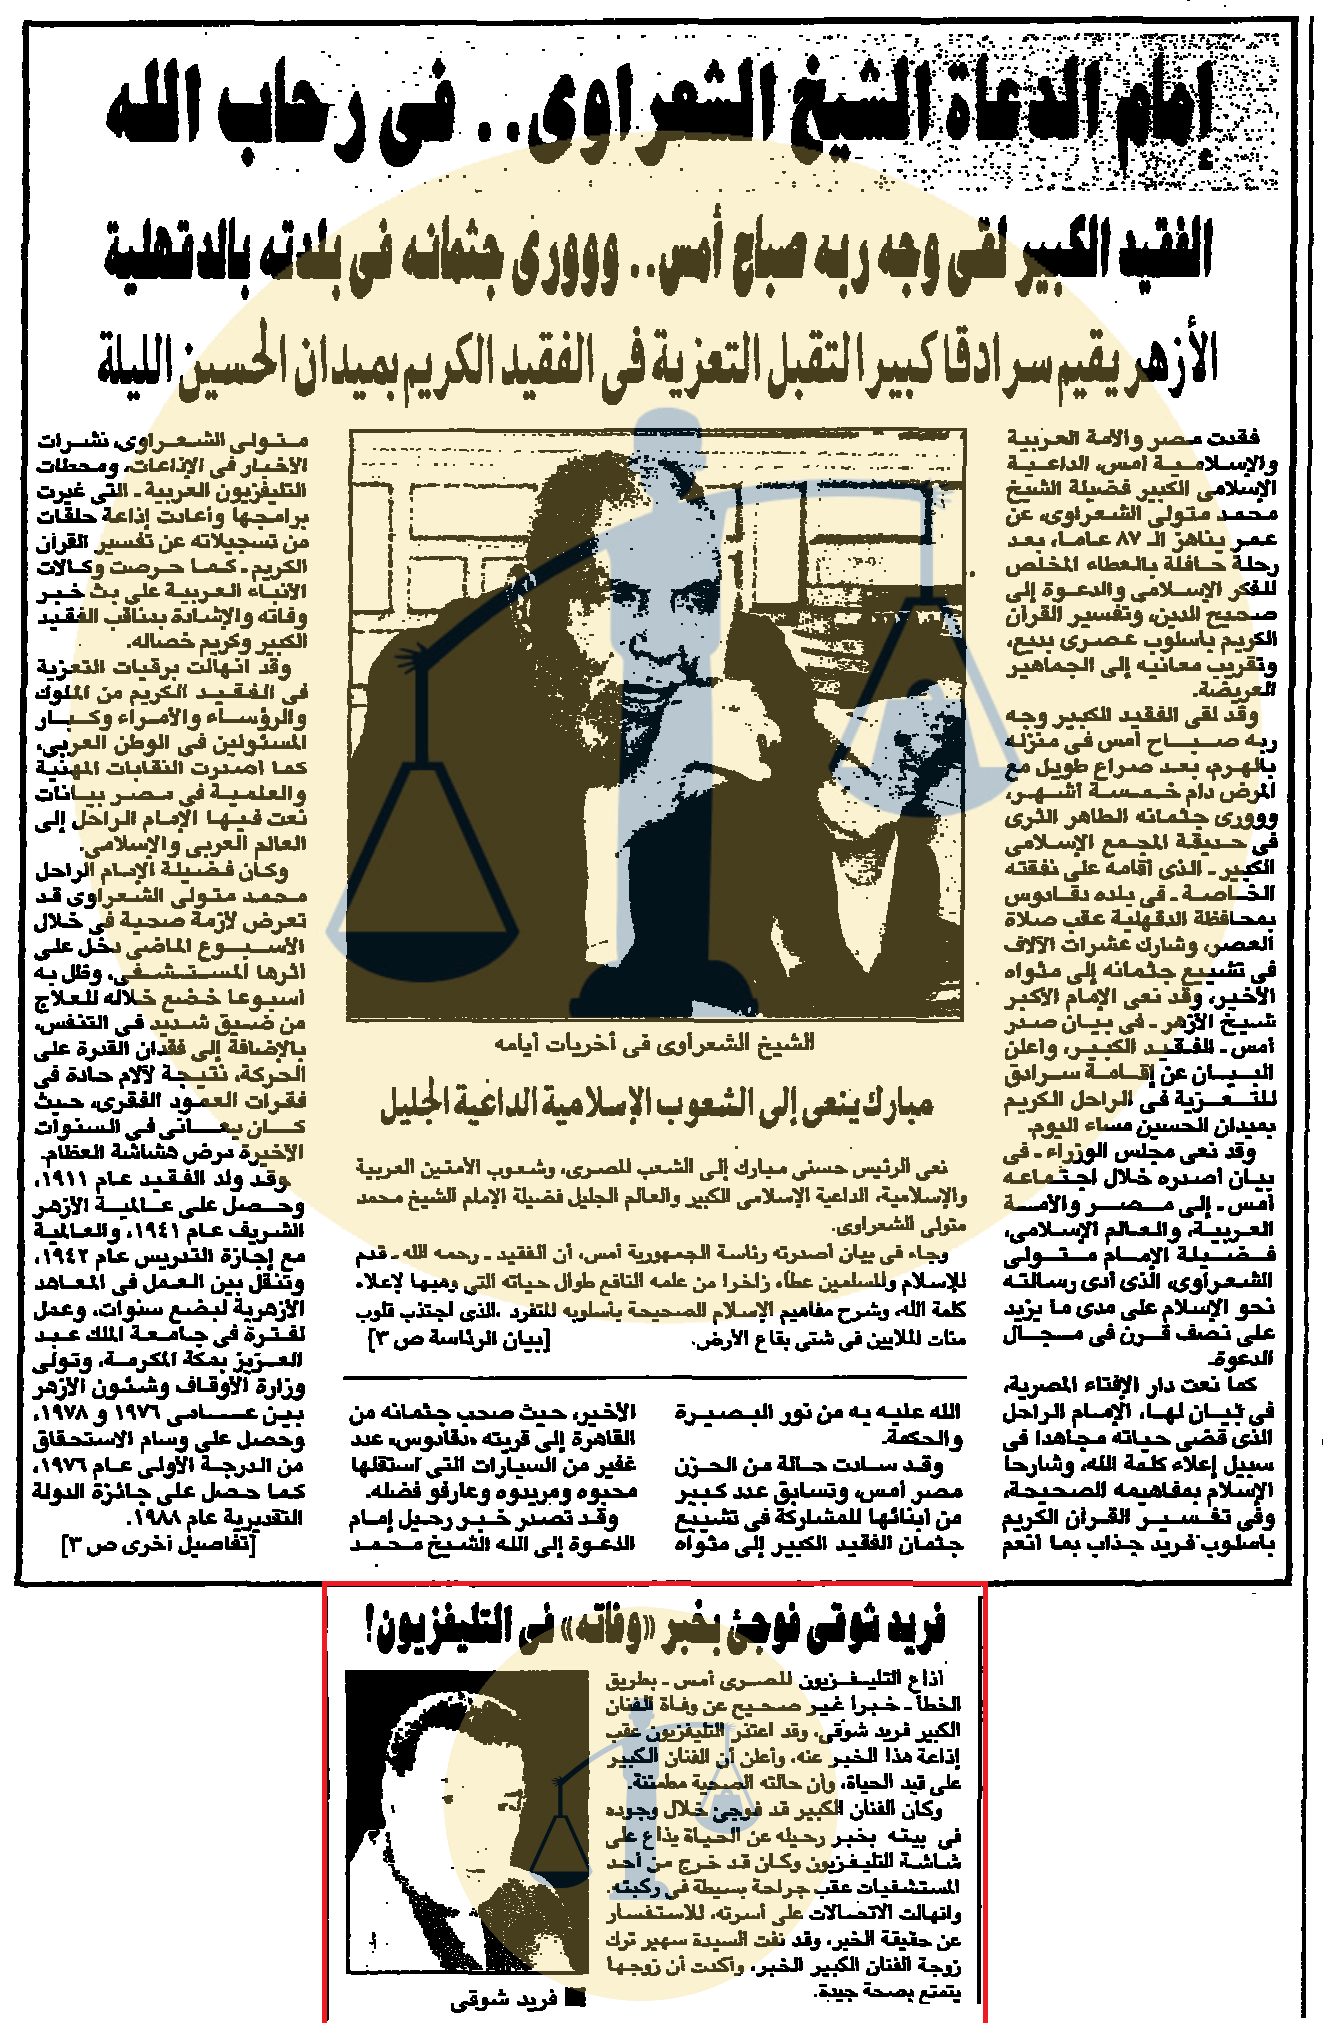 خبر وفاة الشيخ الشعراوي وأسفله شائعة وفاة فريد شوقي